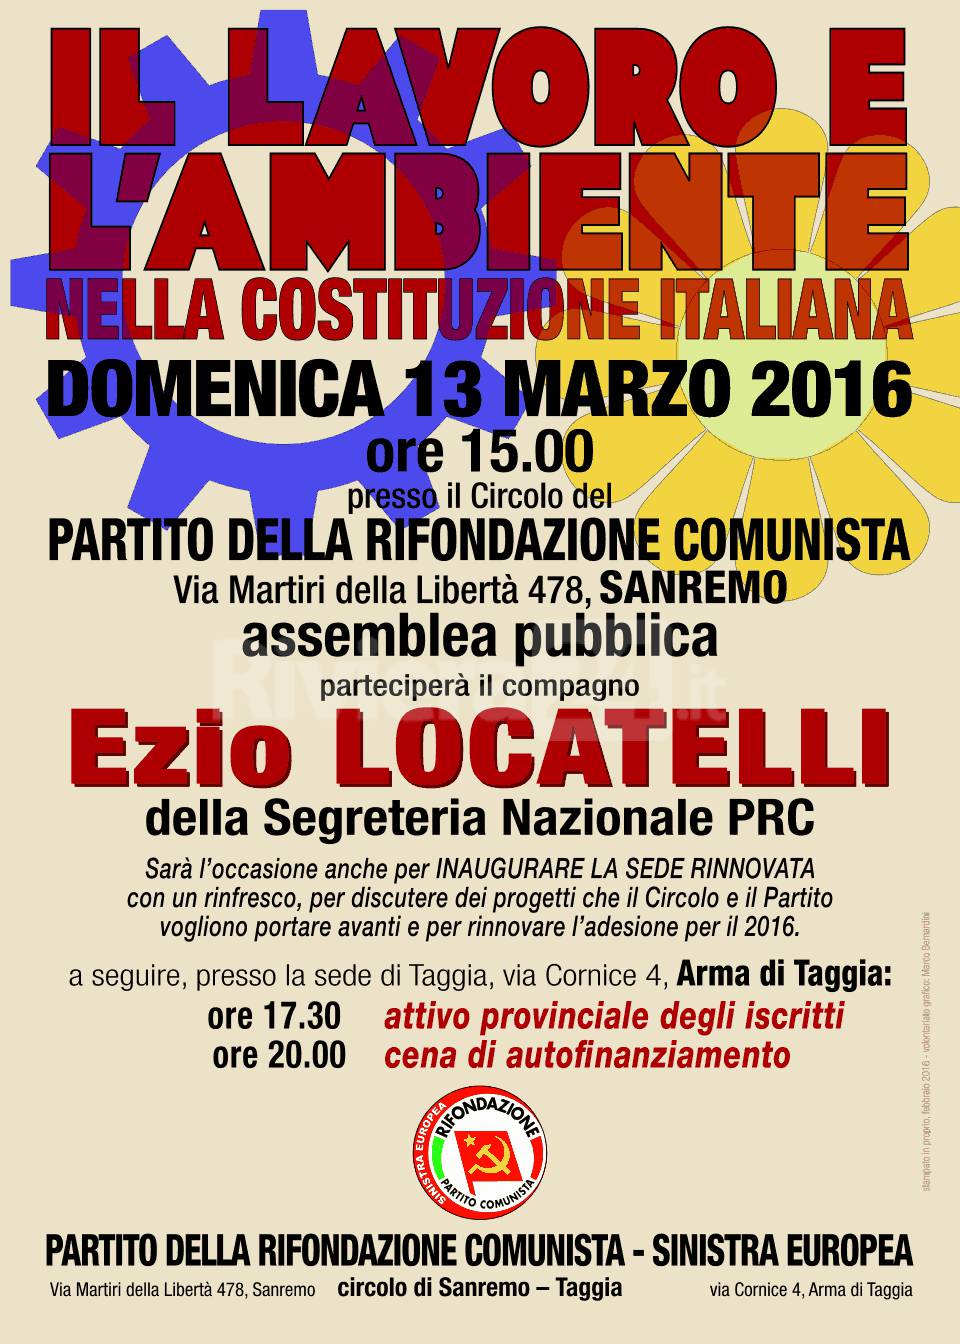 Ezio Locatelli partecipa all'assemblea pubblica "Il lavoro e l'ambiente nella costituzione italiana"